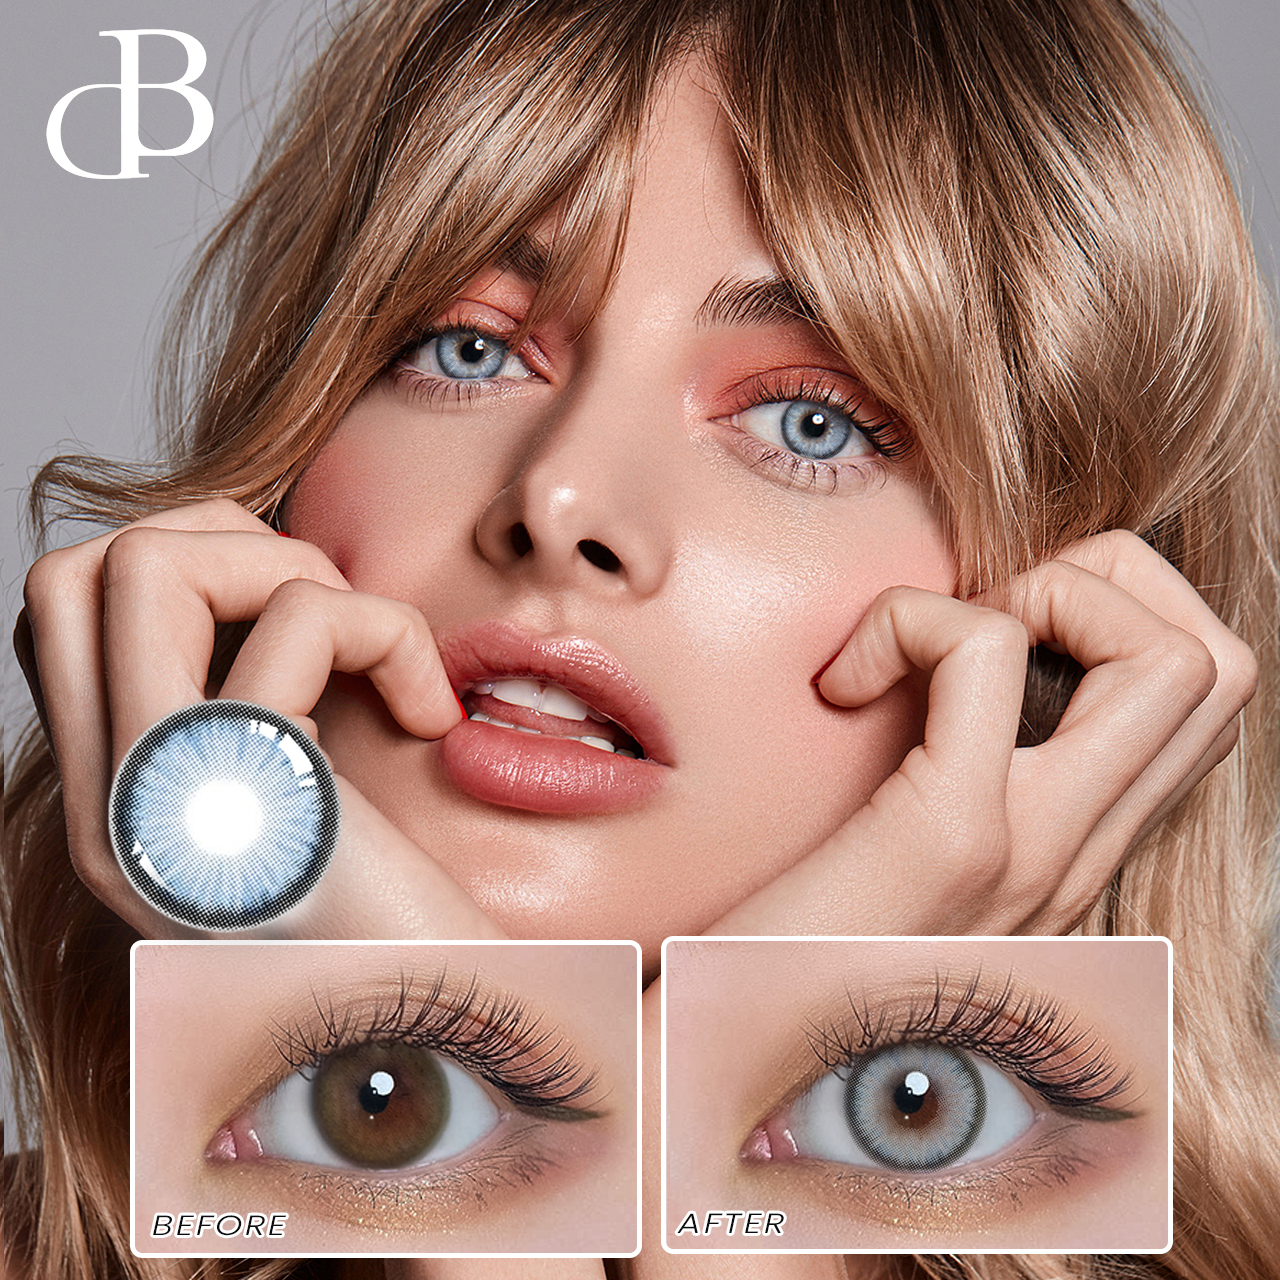 Veľkoobchod dbeyes kvalitné lenseme farebné kontaktné šošovky make up shop